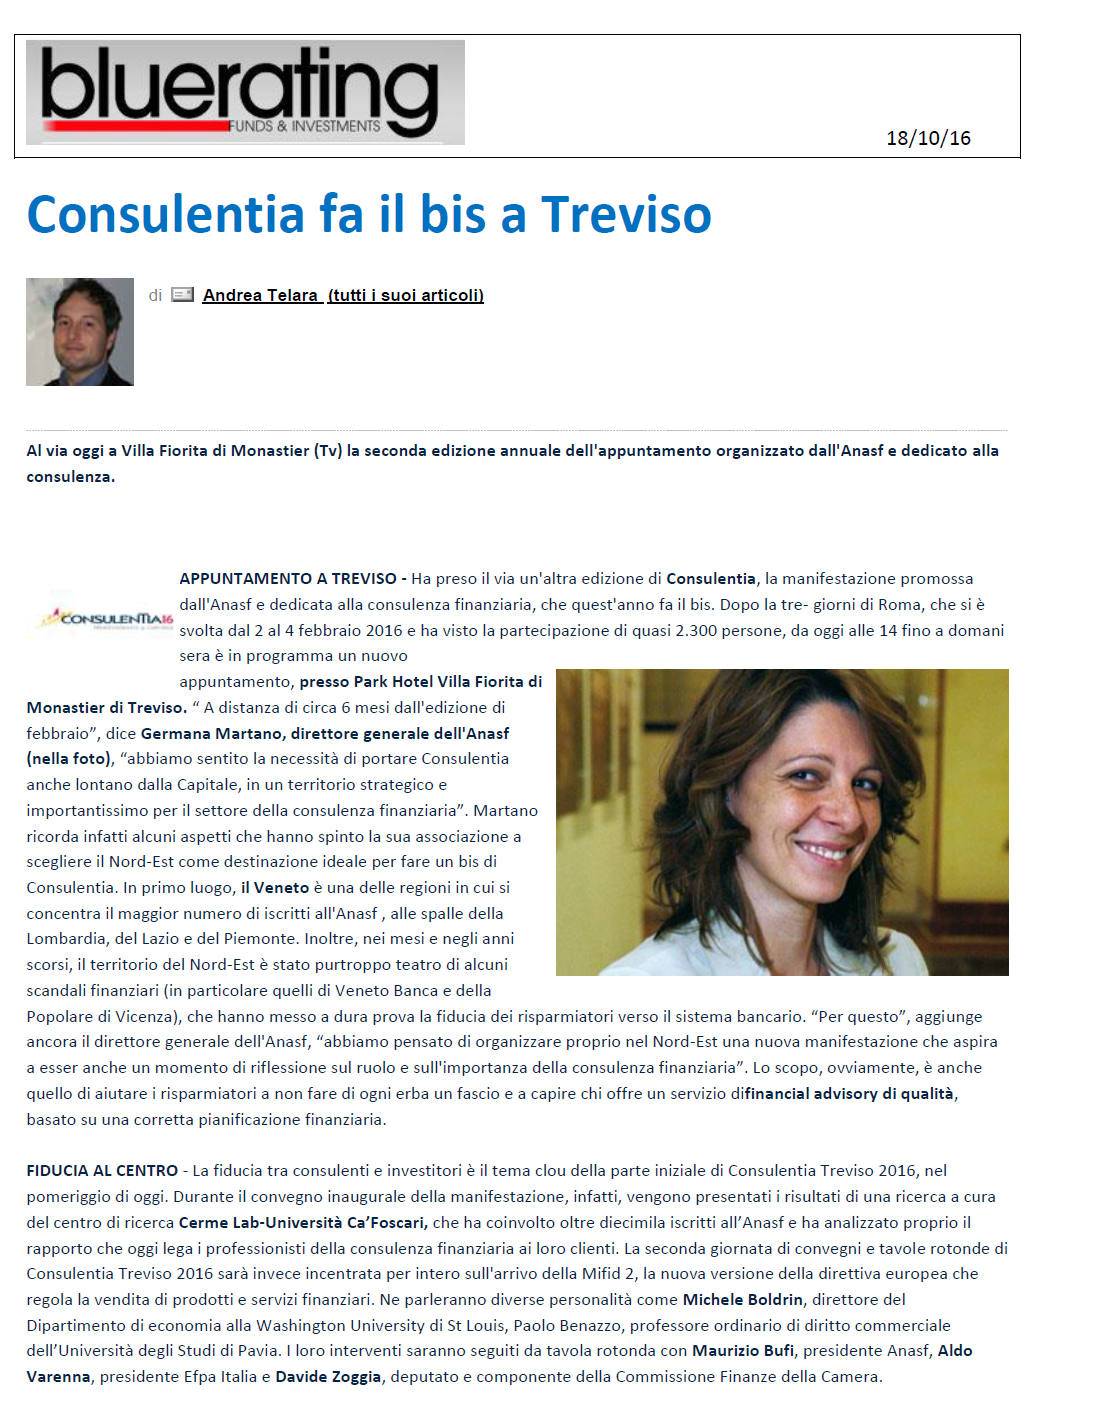 articolo ConsulenTia2016 Treviso su Bluerating